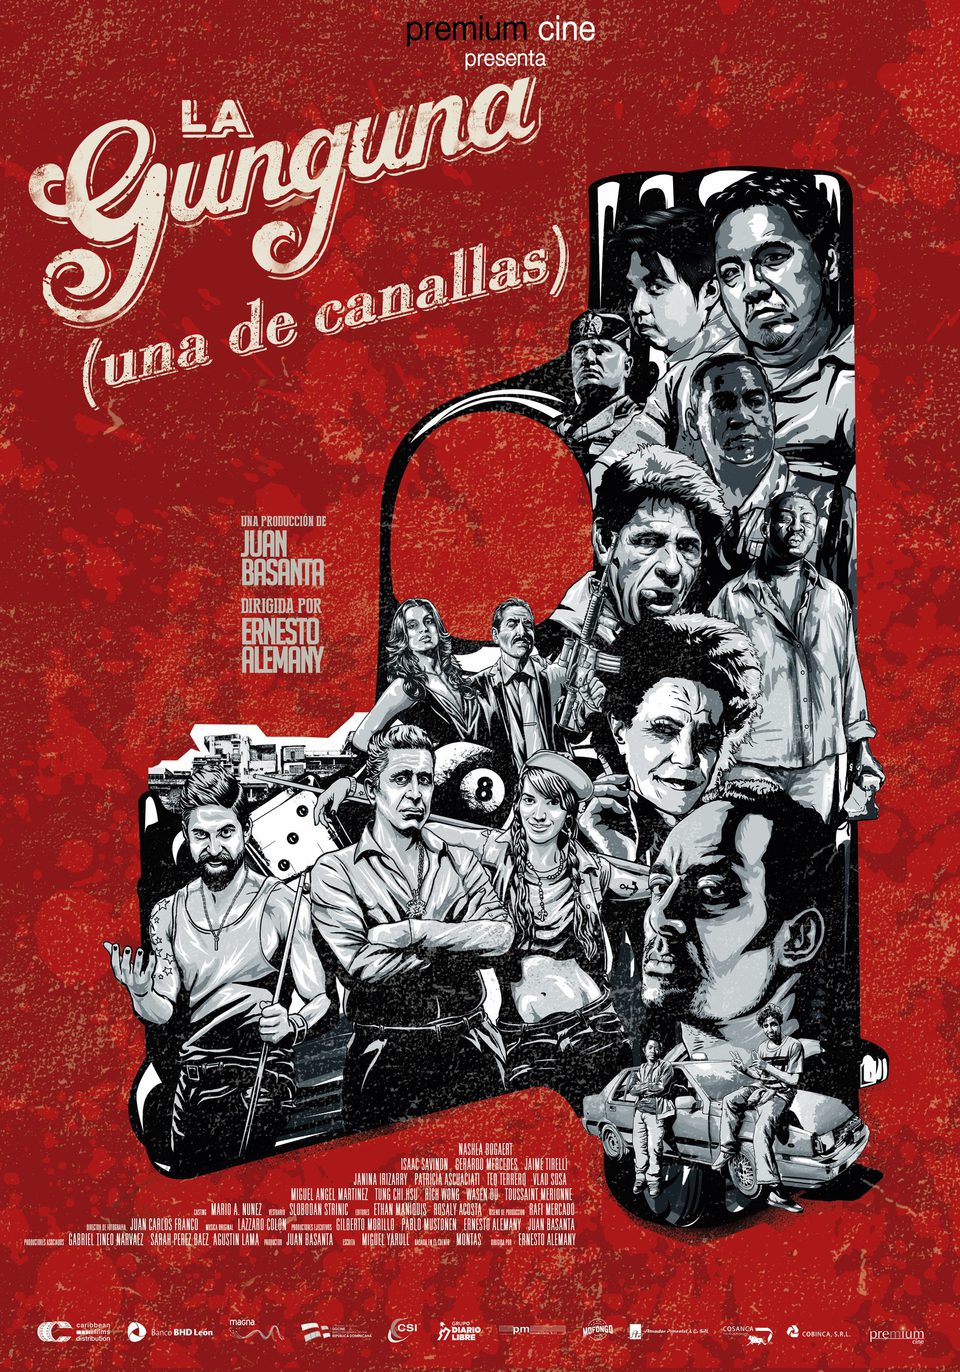 Cartel de La Gunguna, una de canallas - España